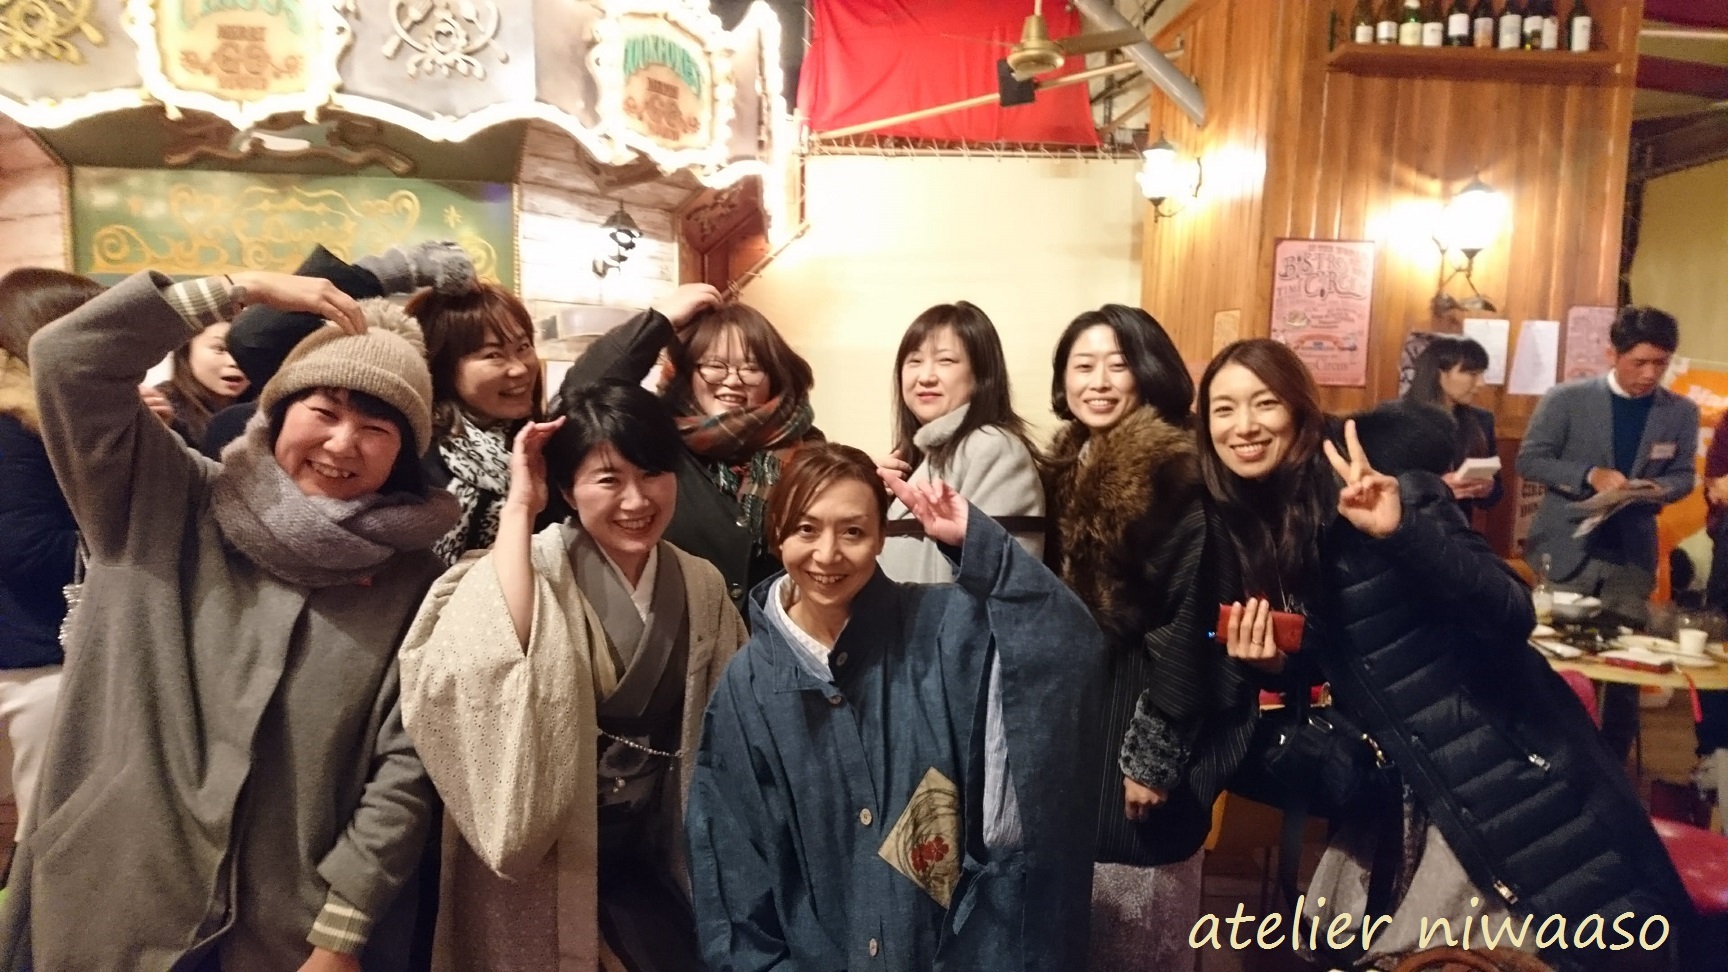 遠州綿紬の生地で作られた森ケイ子さんの作品展が、4/6(金)までツインギャラリー蔵で開催!!